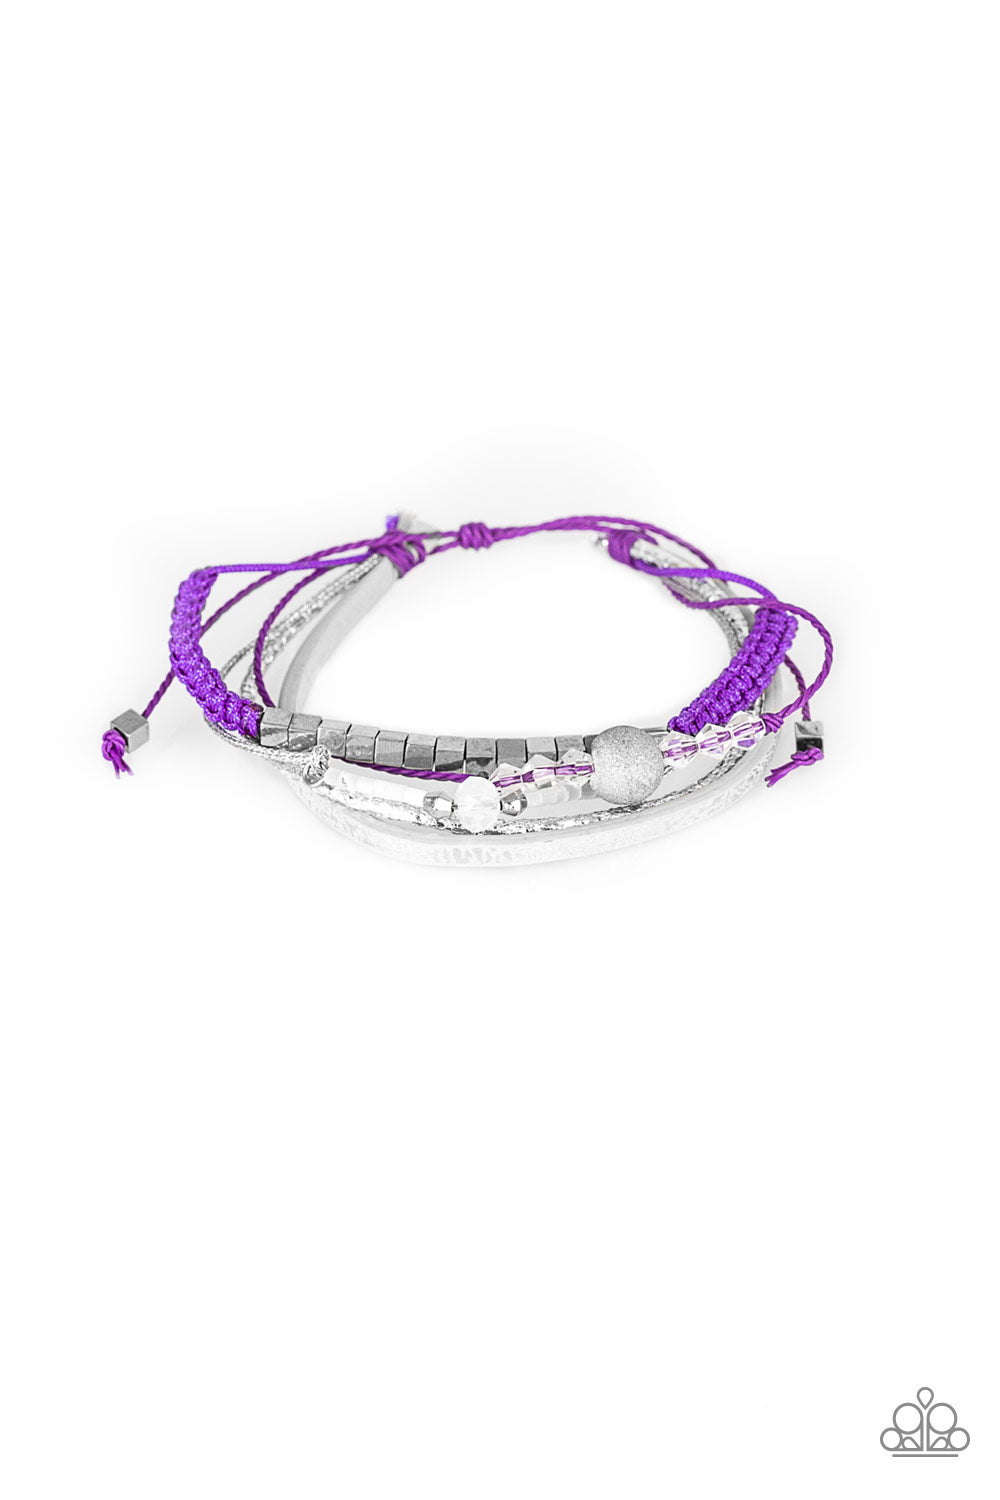 Paparazzi Urban Collection bracelet - Take A SPACEWALK - Purple